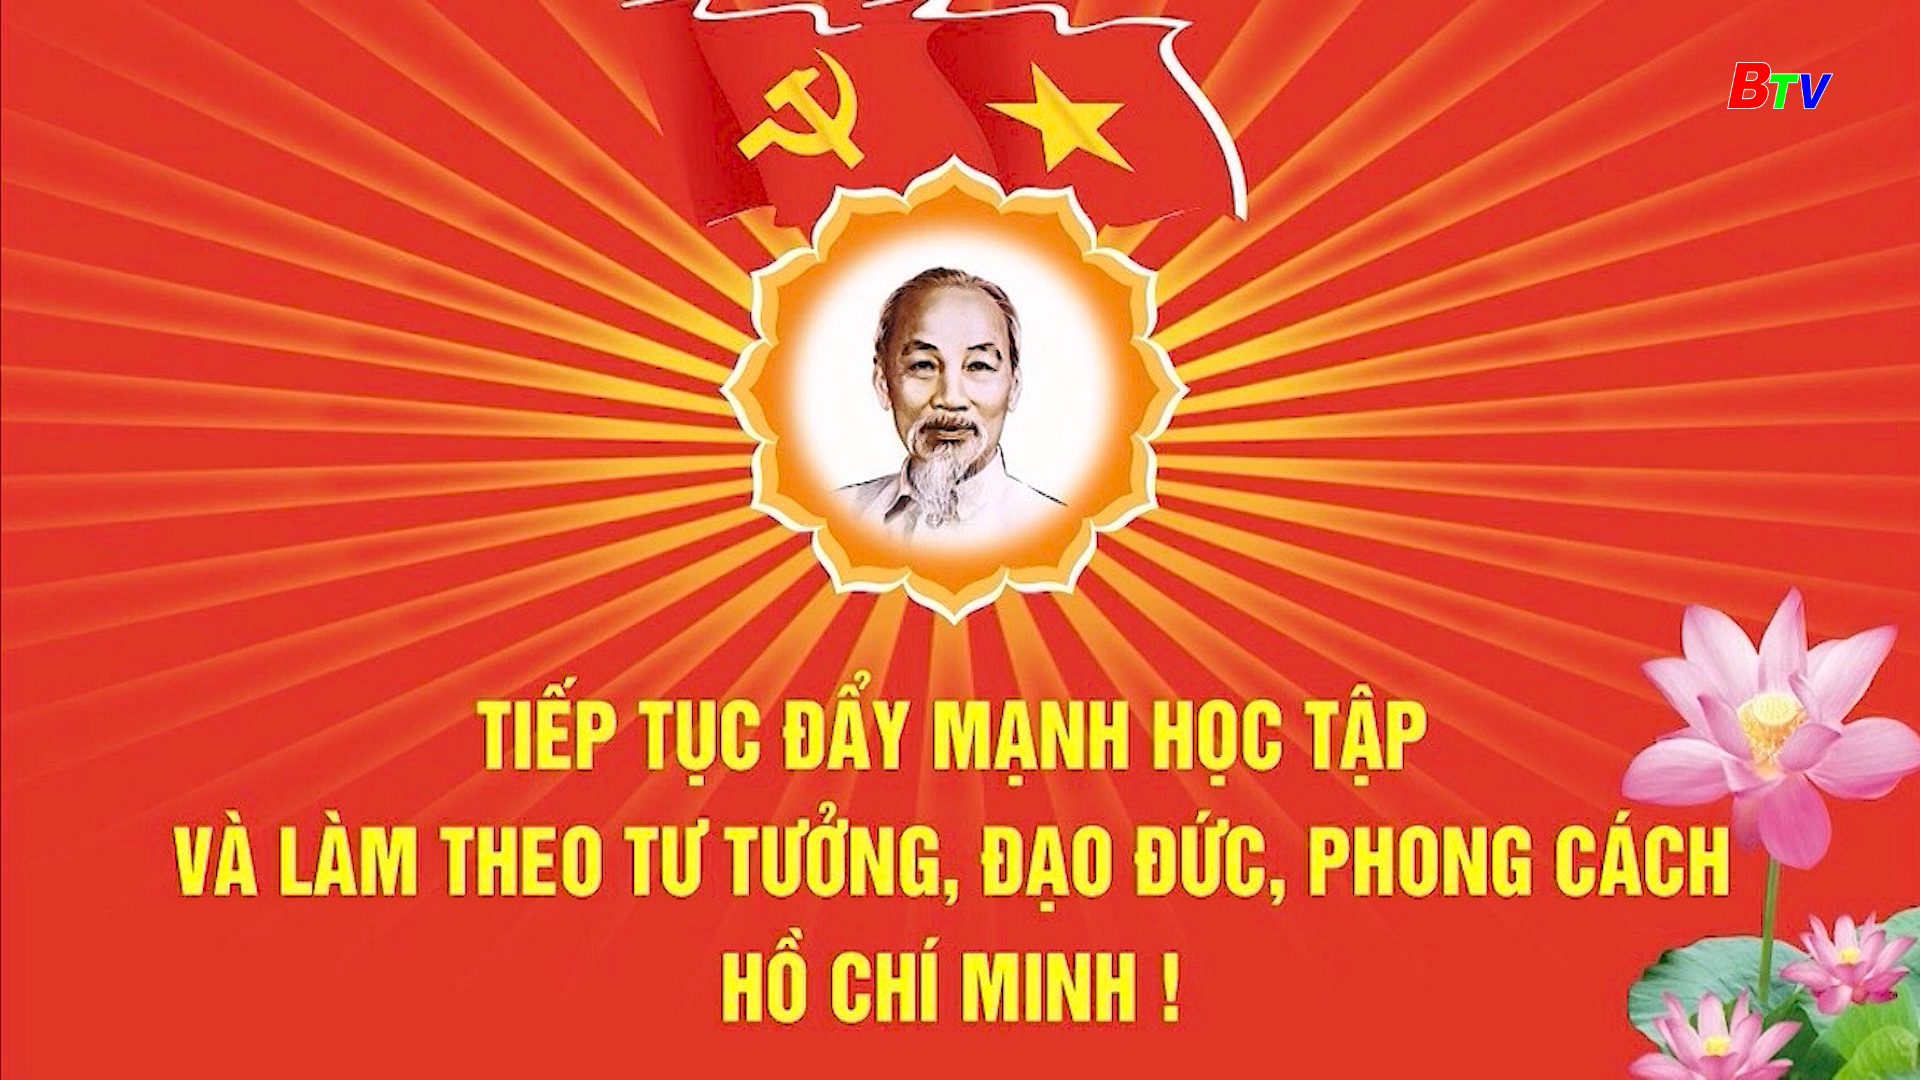 Tiếp tục đẩy mạnh học tập và làm theo tư tưởng, đạo đức, phong cách Hồ Chí Minh!